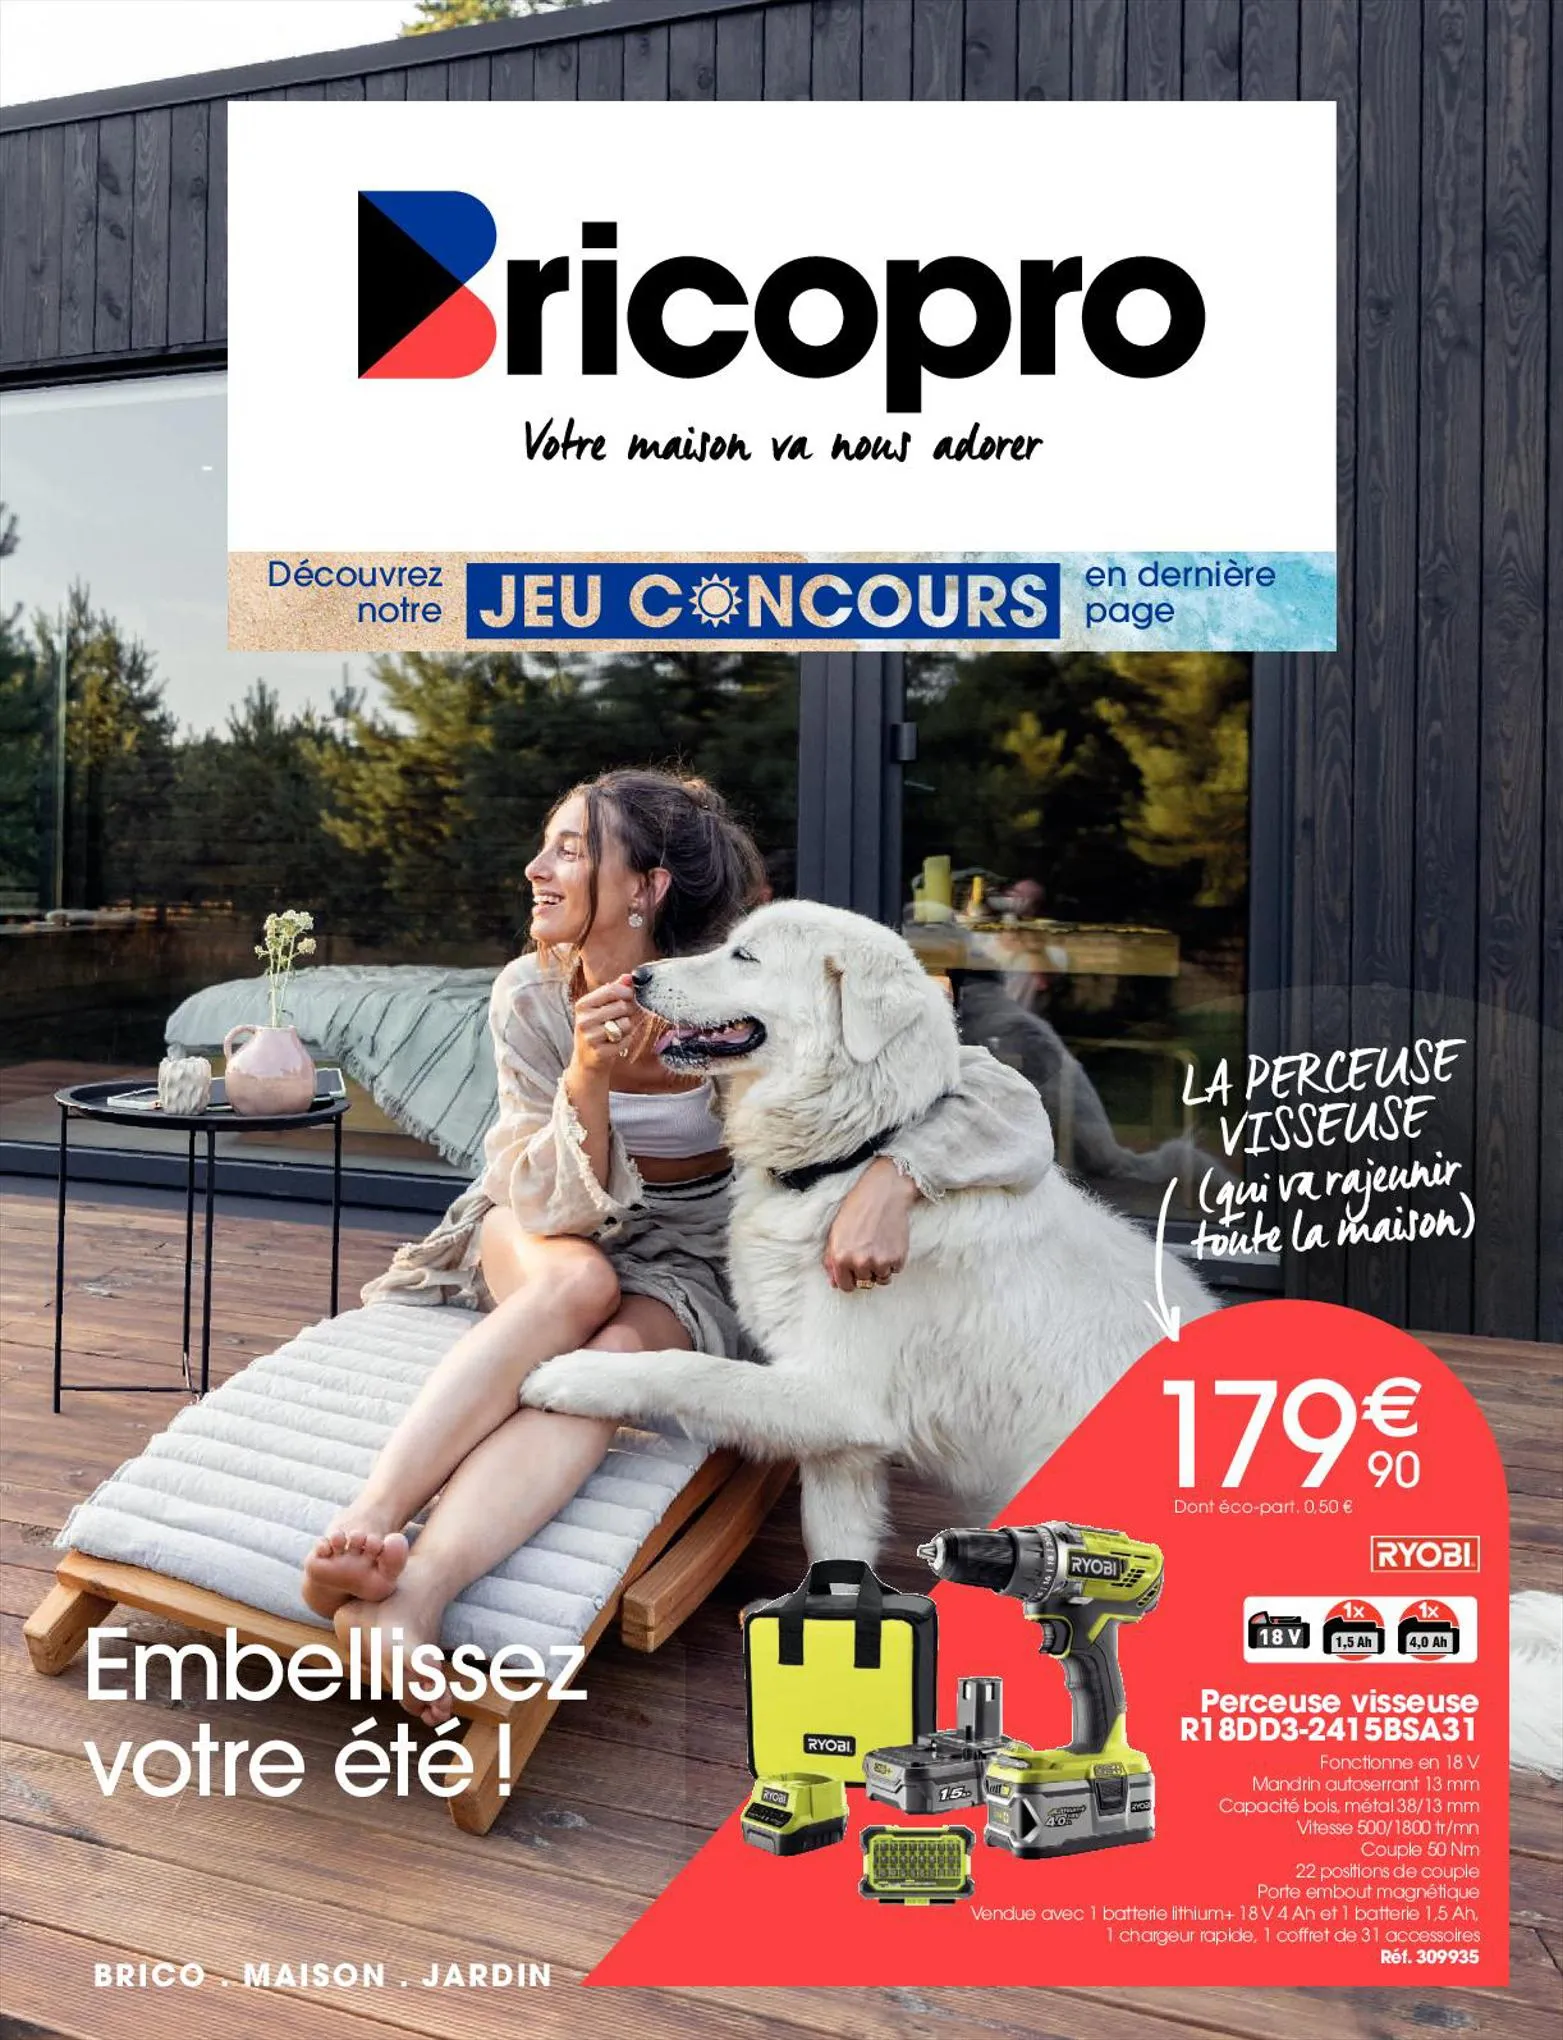 Catalogue Catalogue Brico Pro, page 00001